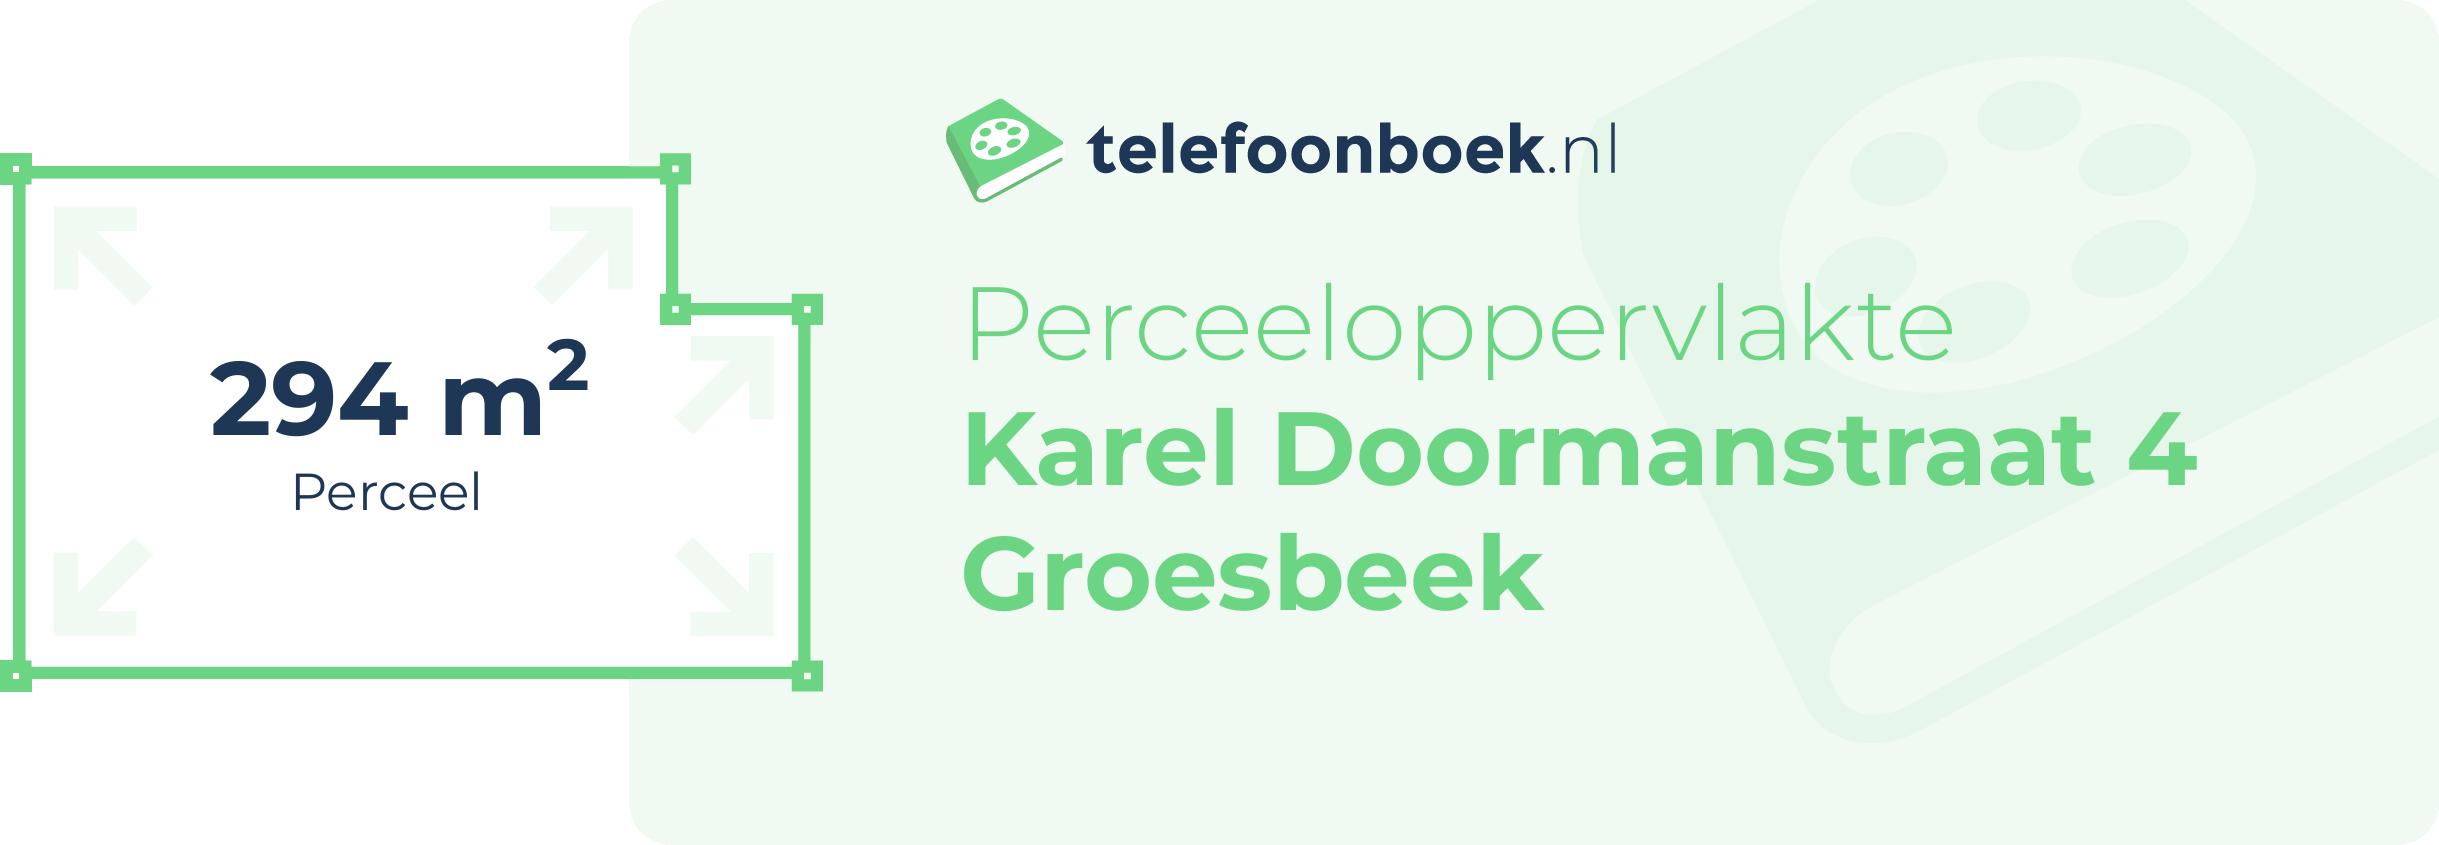 Perceeloppervlakte Karel Doormanstraat 4 Groesbeek